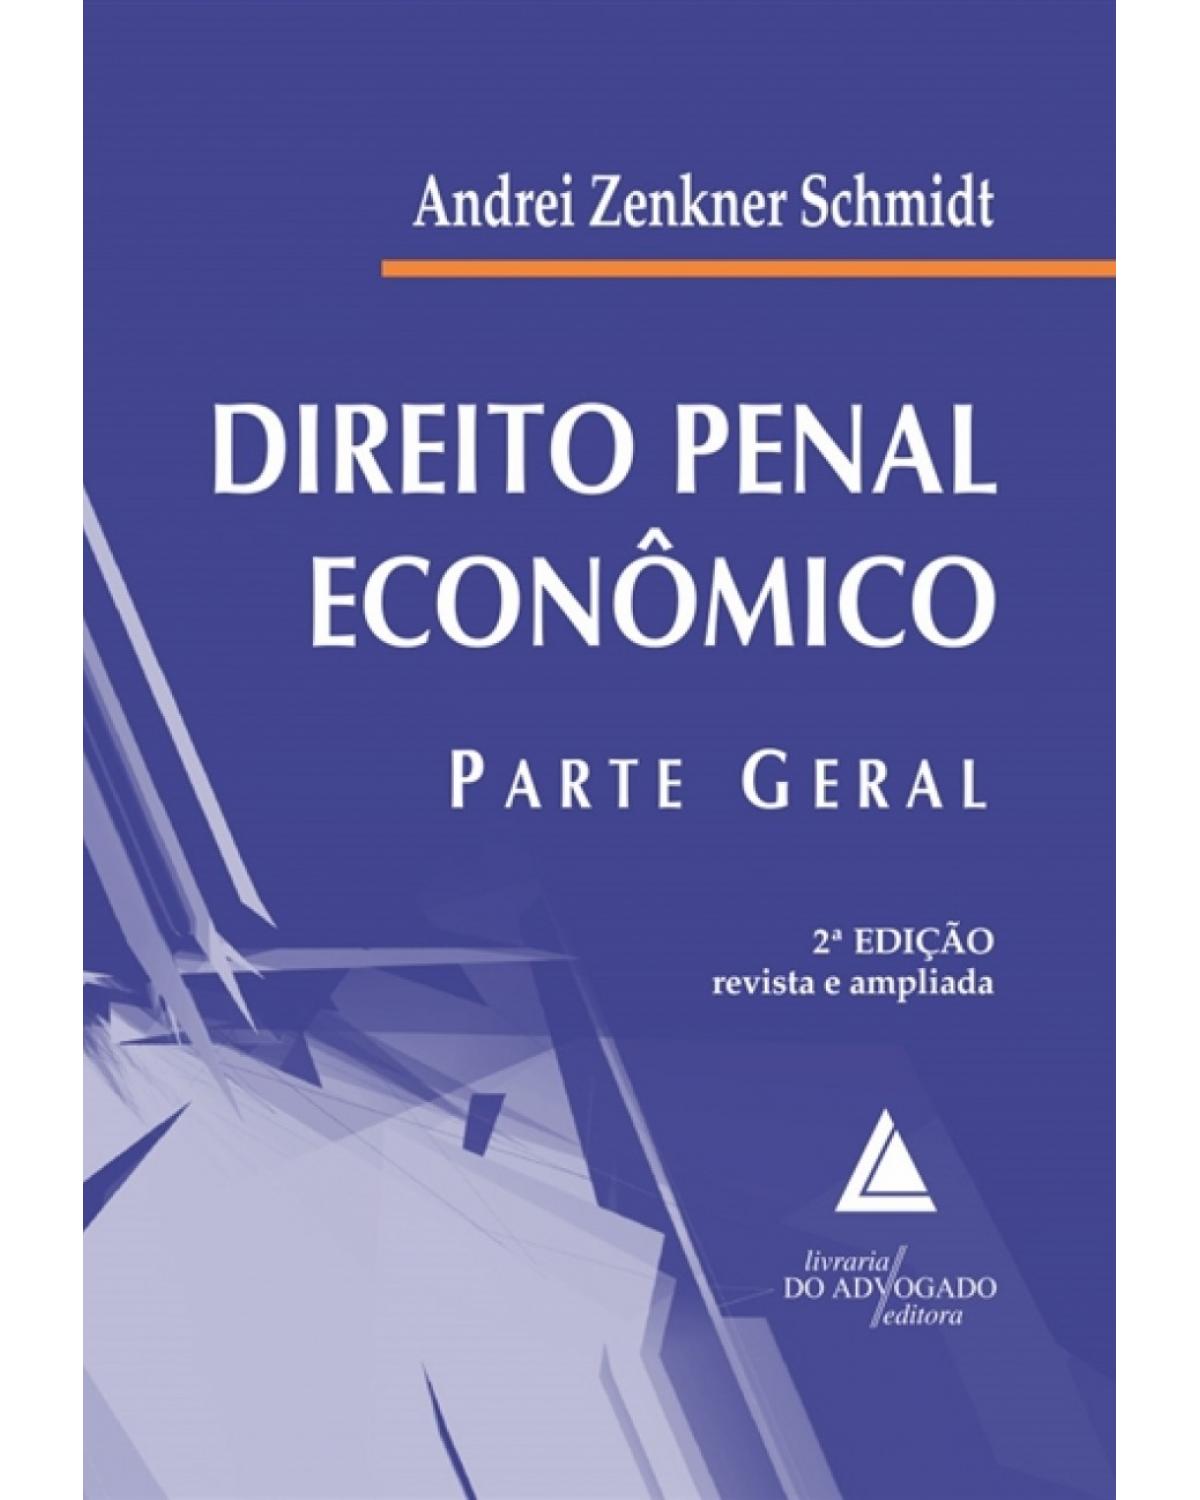 Direito penal econômico - parte geral - 2ª Edição | 2018